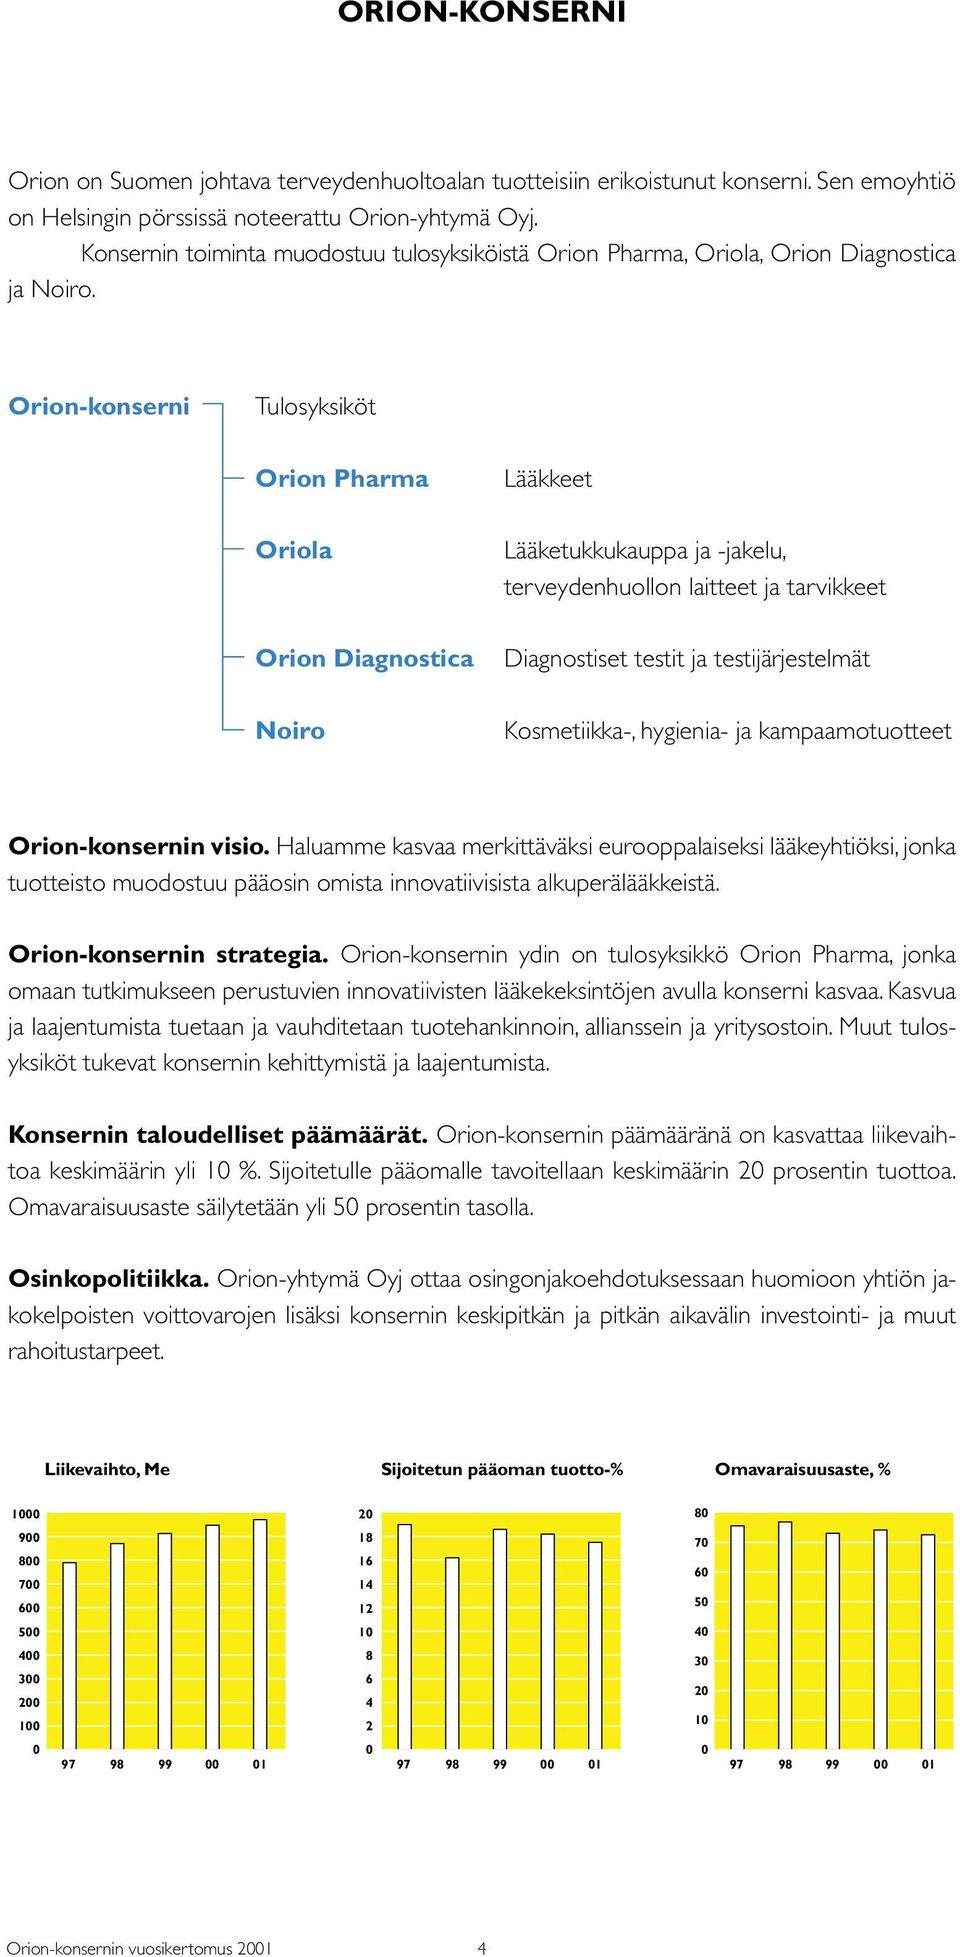 Orion-konserni Tulosyksiköt Orion Pharma Oriola Orion Diagnostica Noiro Lääkkeet Lääketukkukauppa ja -jakelu, terveydenhuollon laitteet ja tarvikkeet Diagnostiset testit ja testijärjestelmät